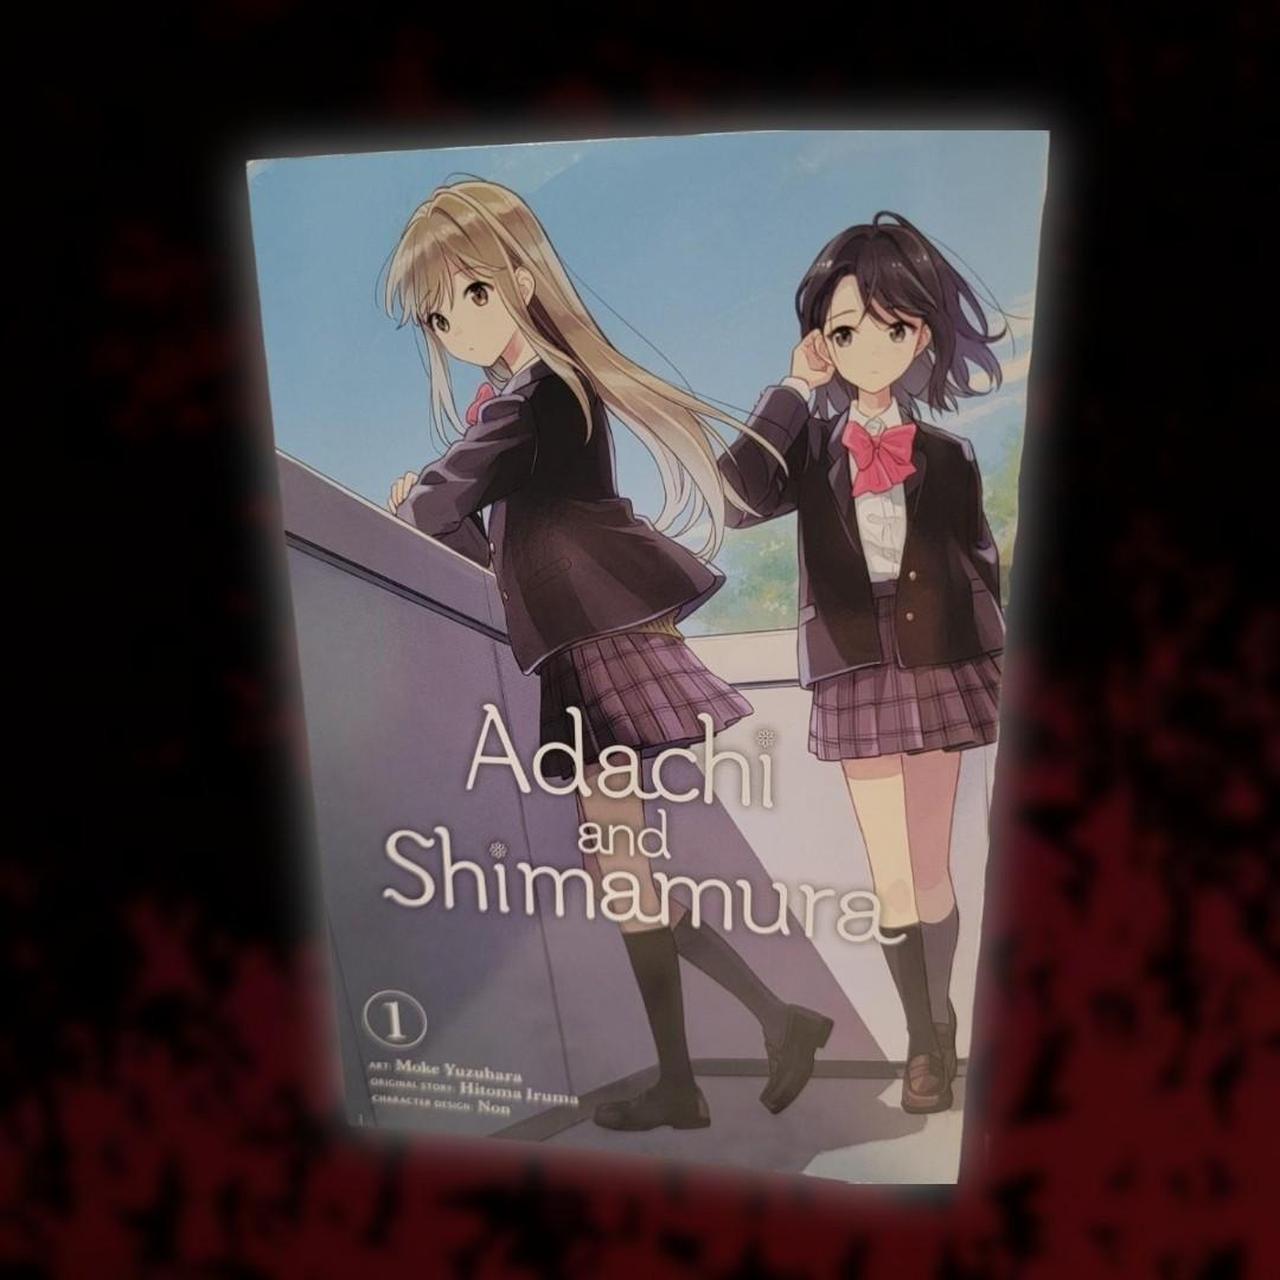 Adachi and Shimamura Manga, Vol. 1 by Hitoma Iruma, Paperback